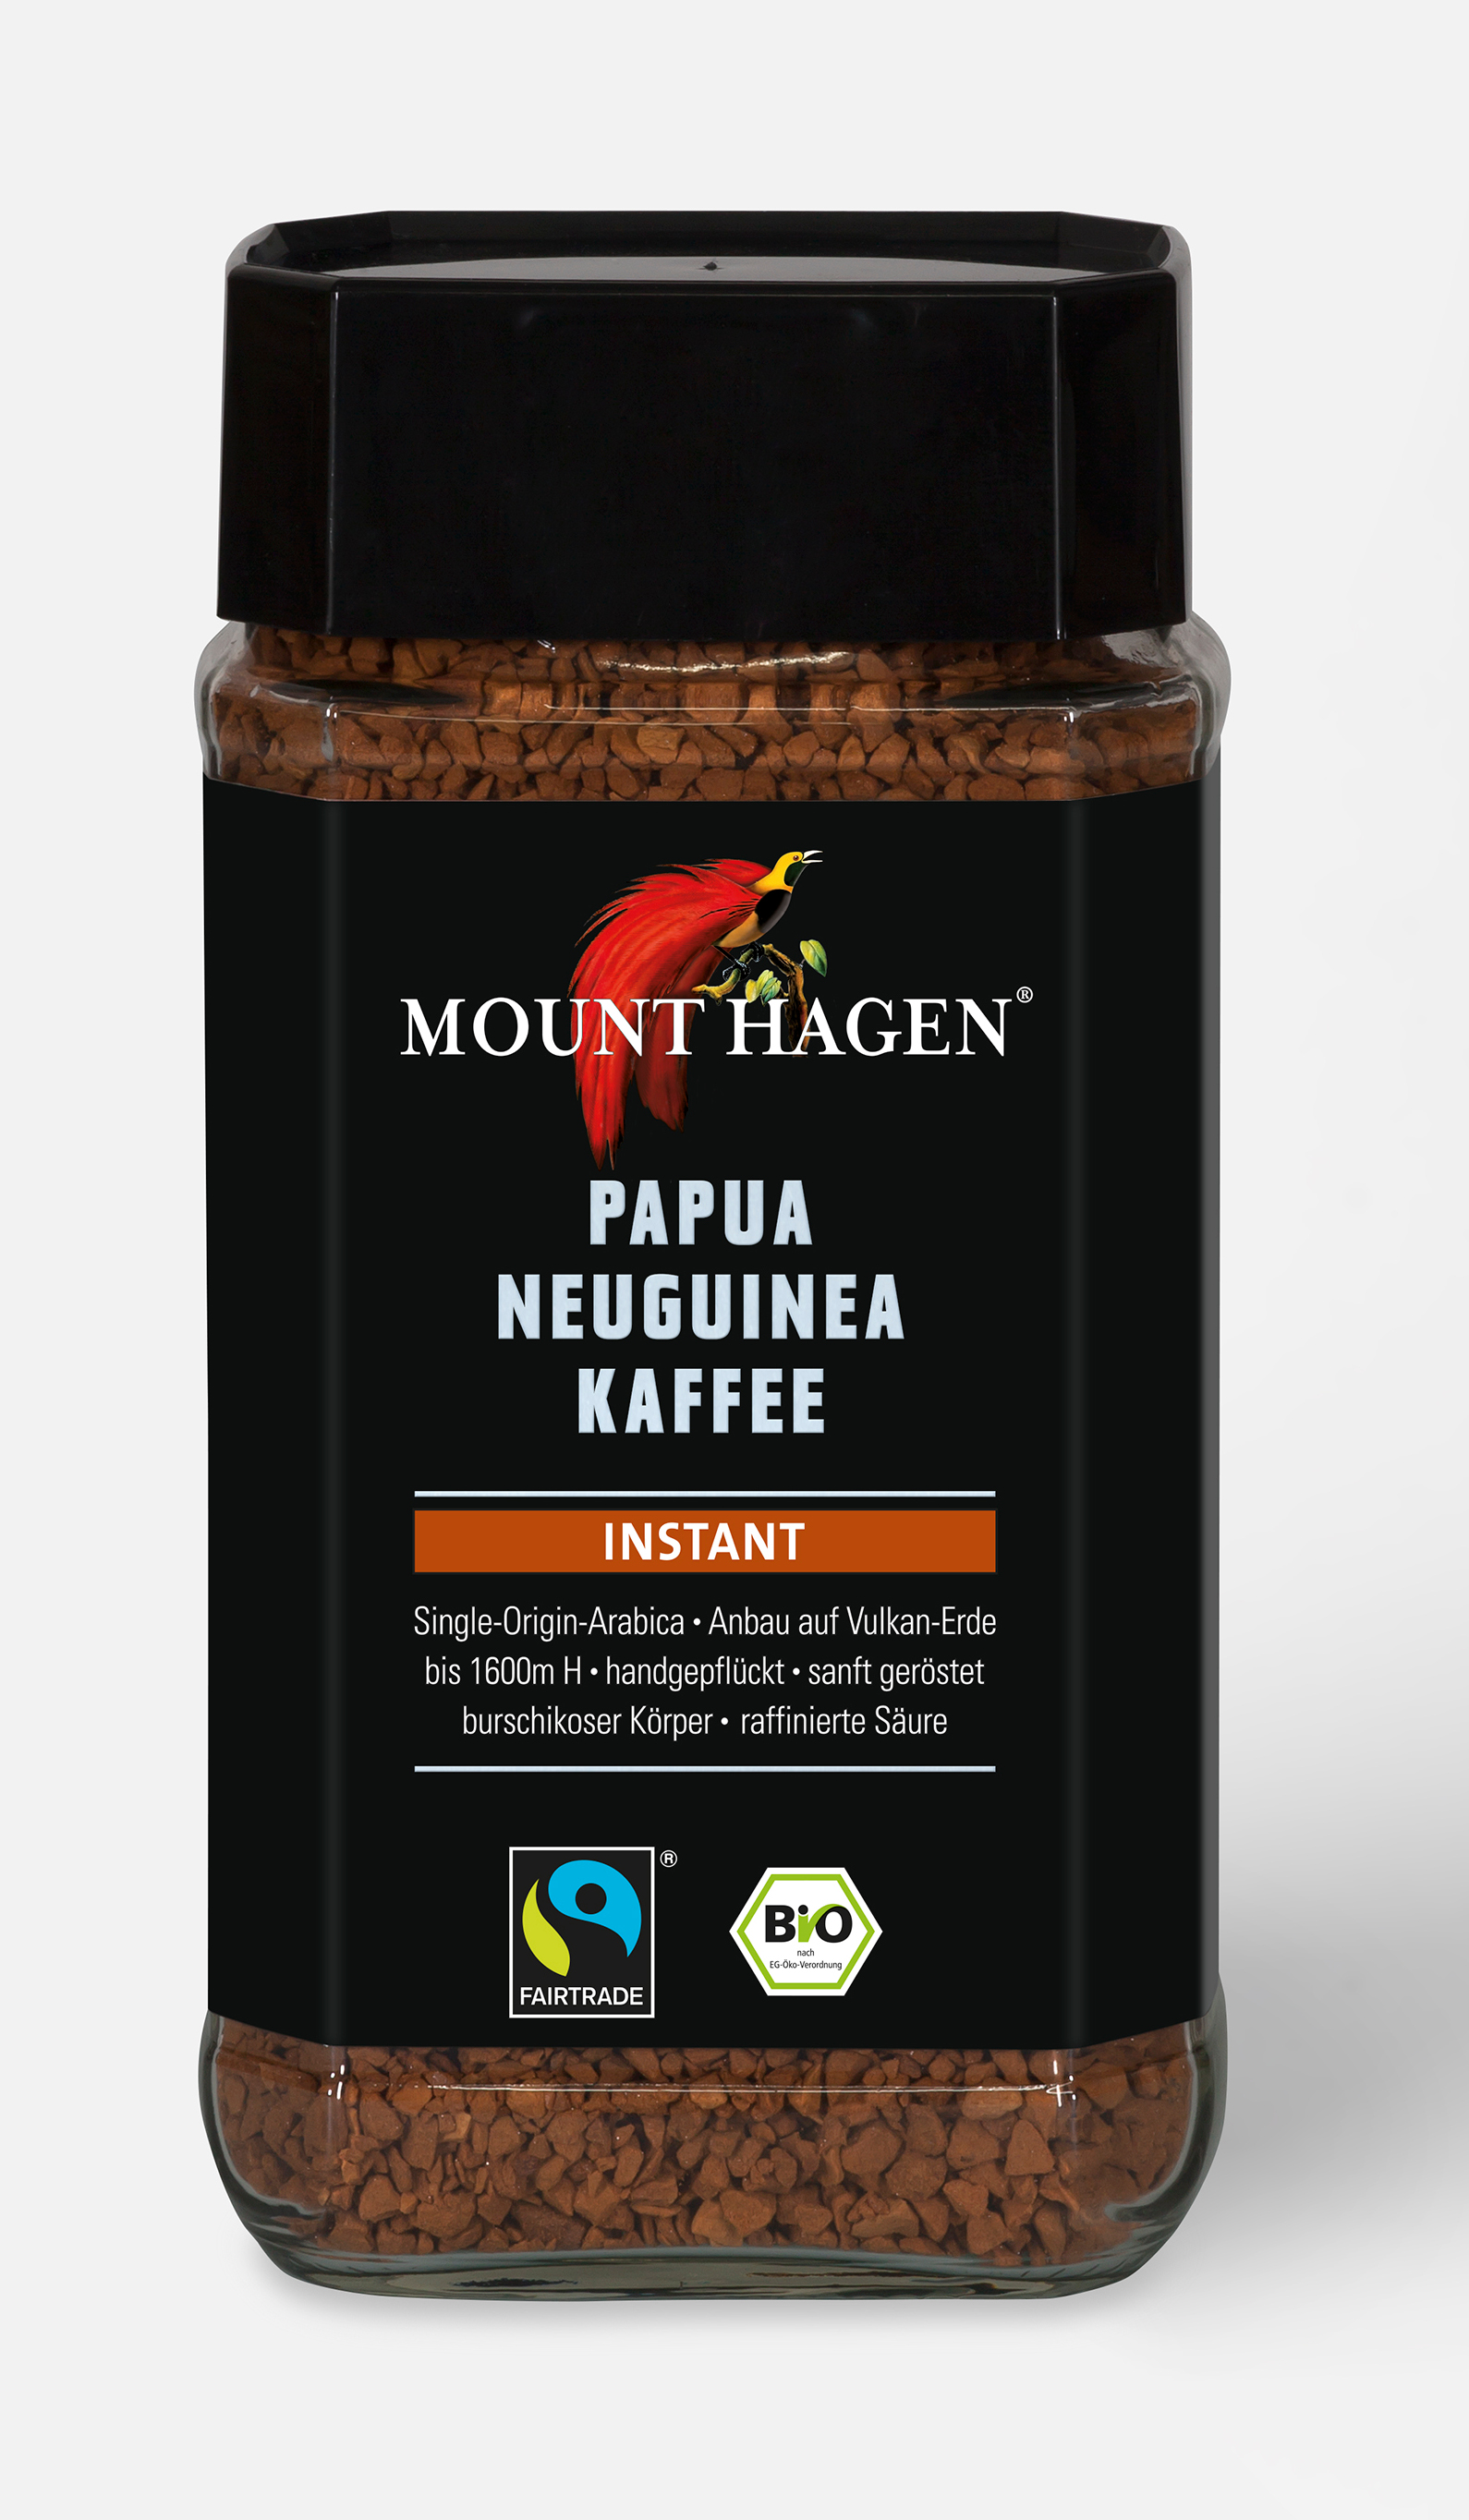 Papua Neuguinea Kaffee Instant